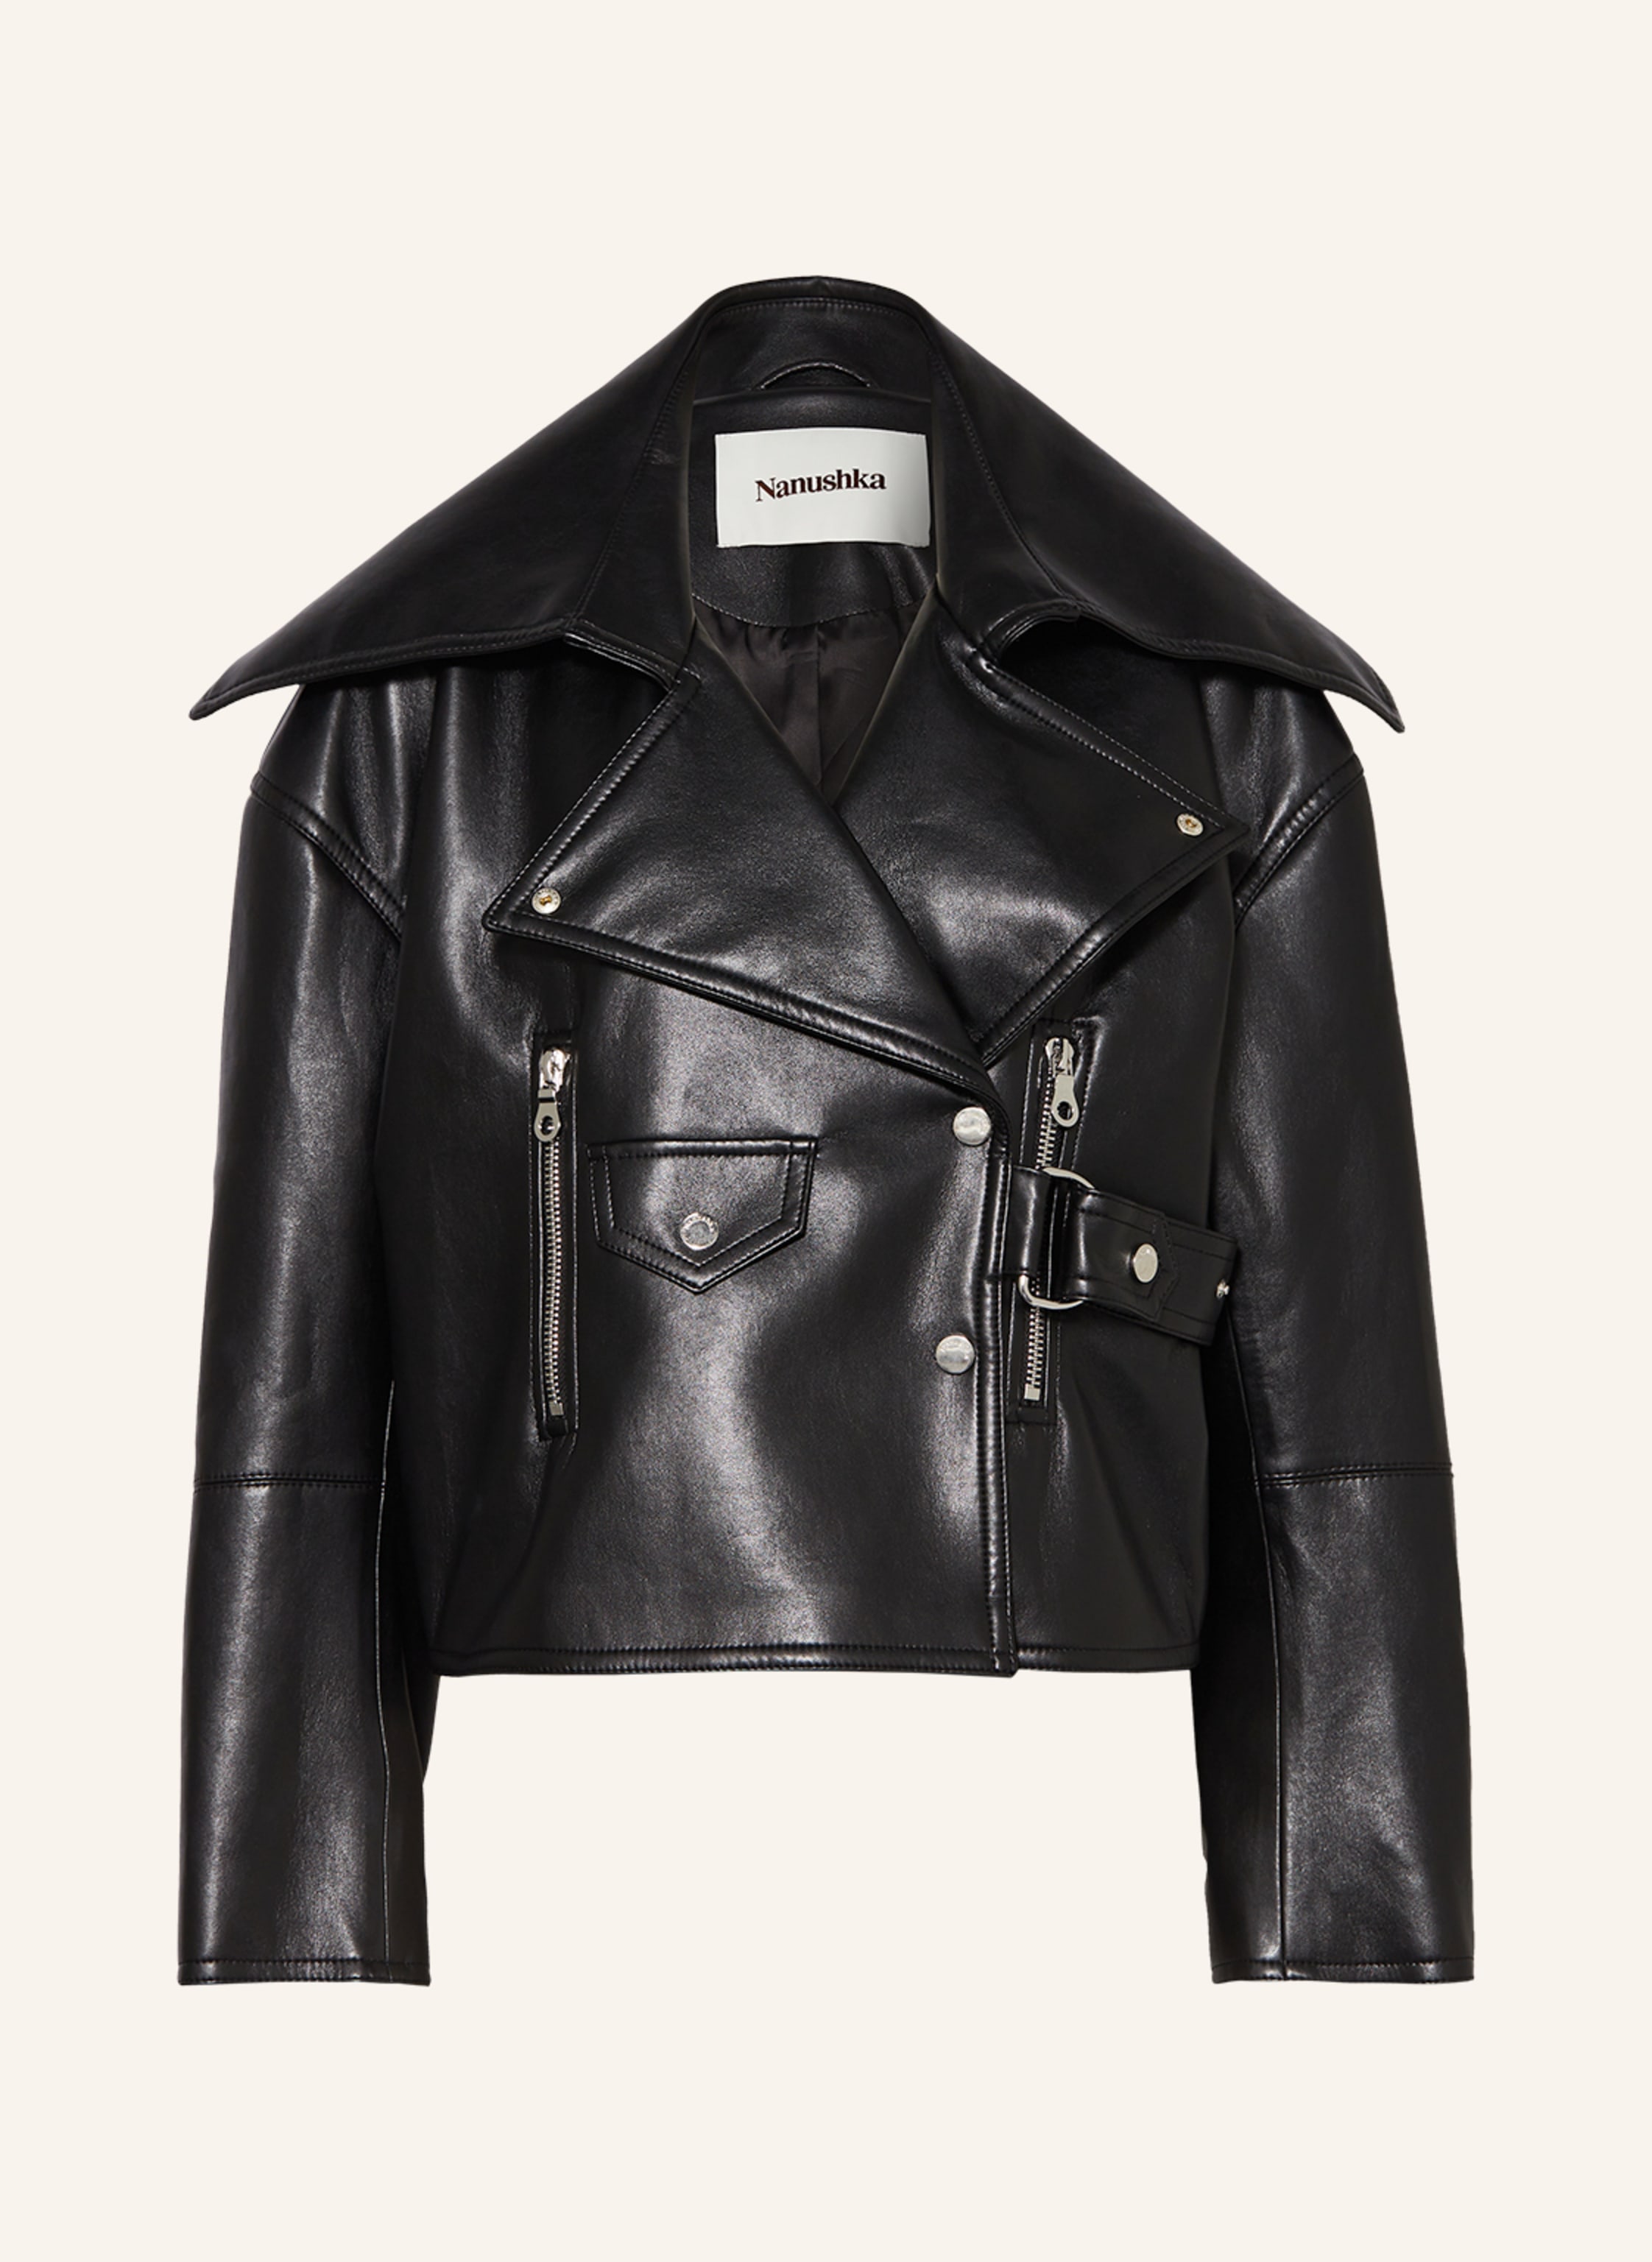 Nanushka Biker jacket ADO in leather look in black